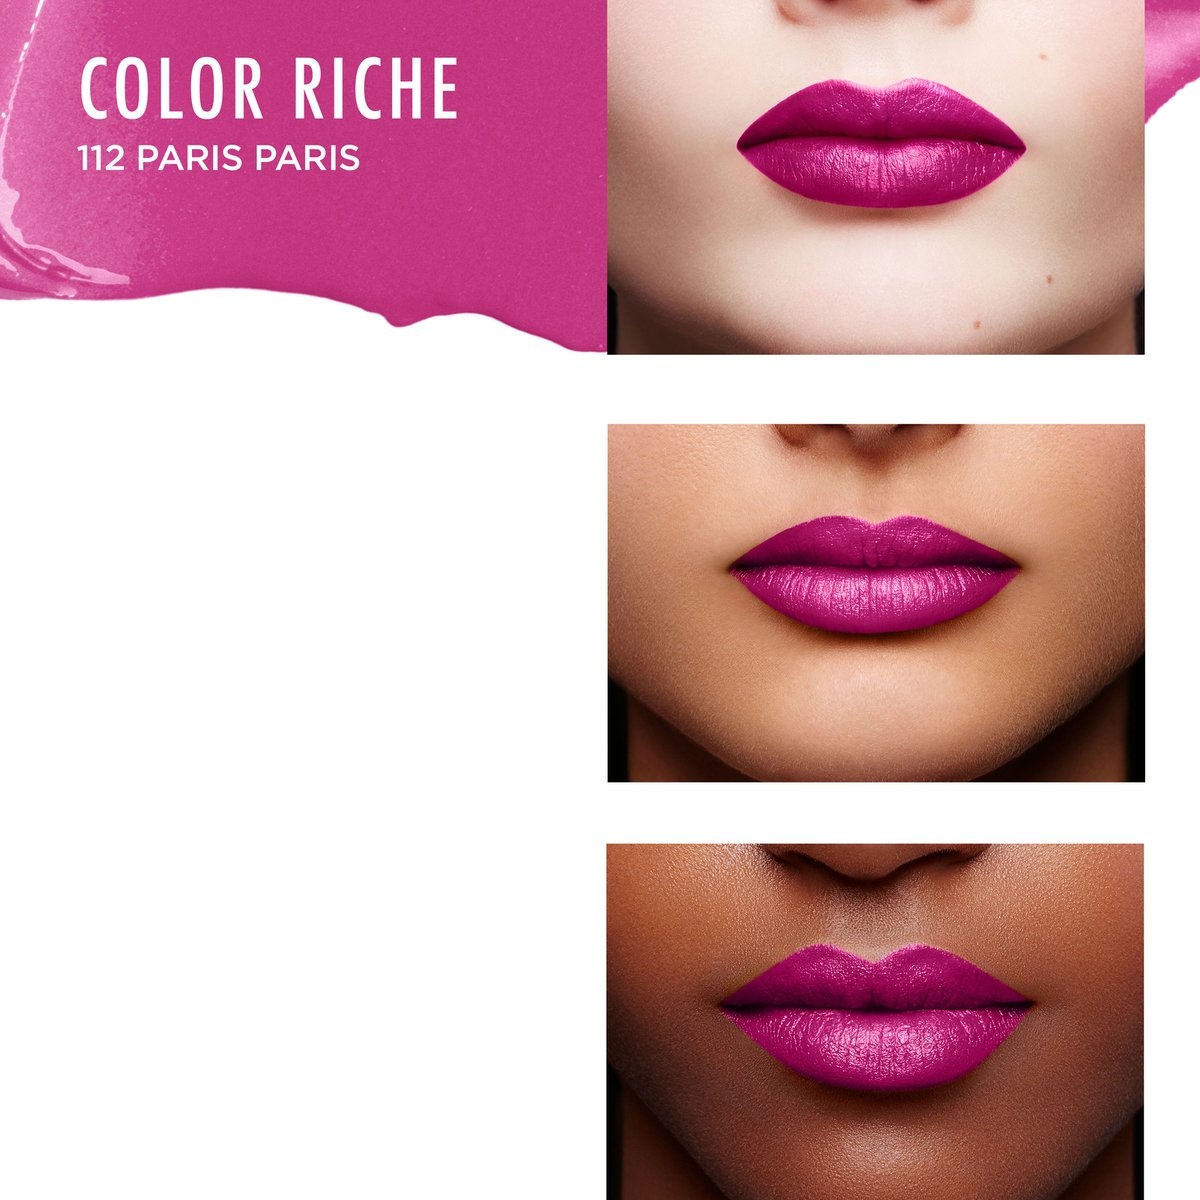 L'Oréal Paris Lipstick Color Riche Satin - 112 Paris Paris Pink